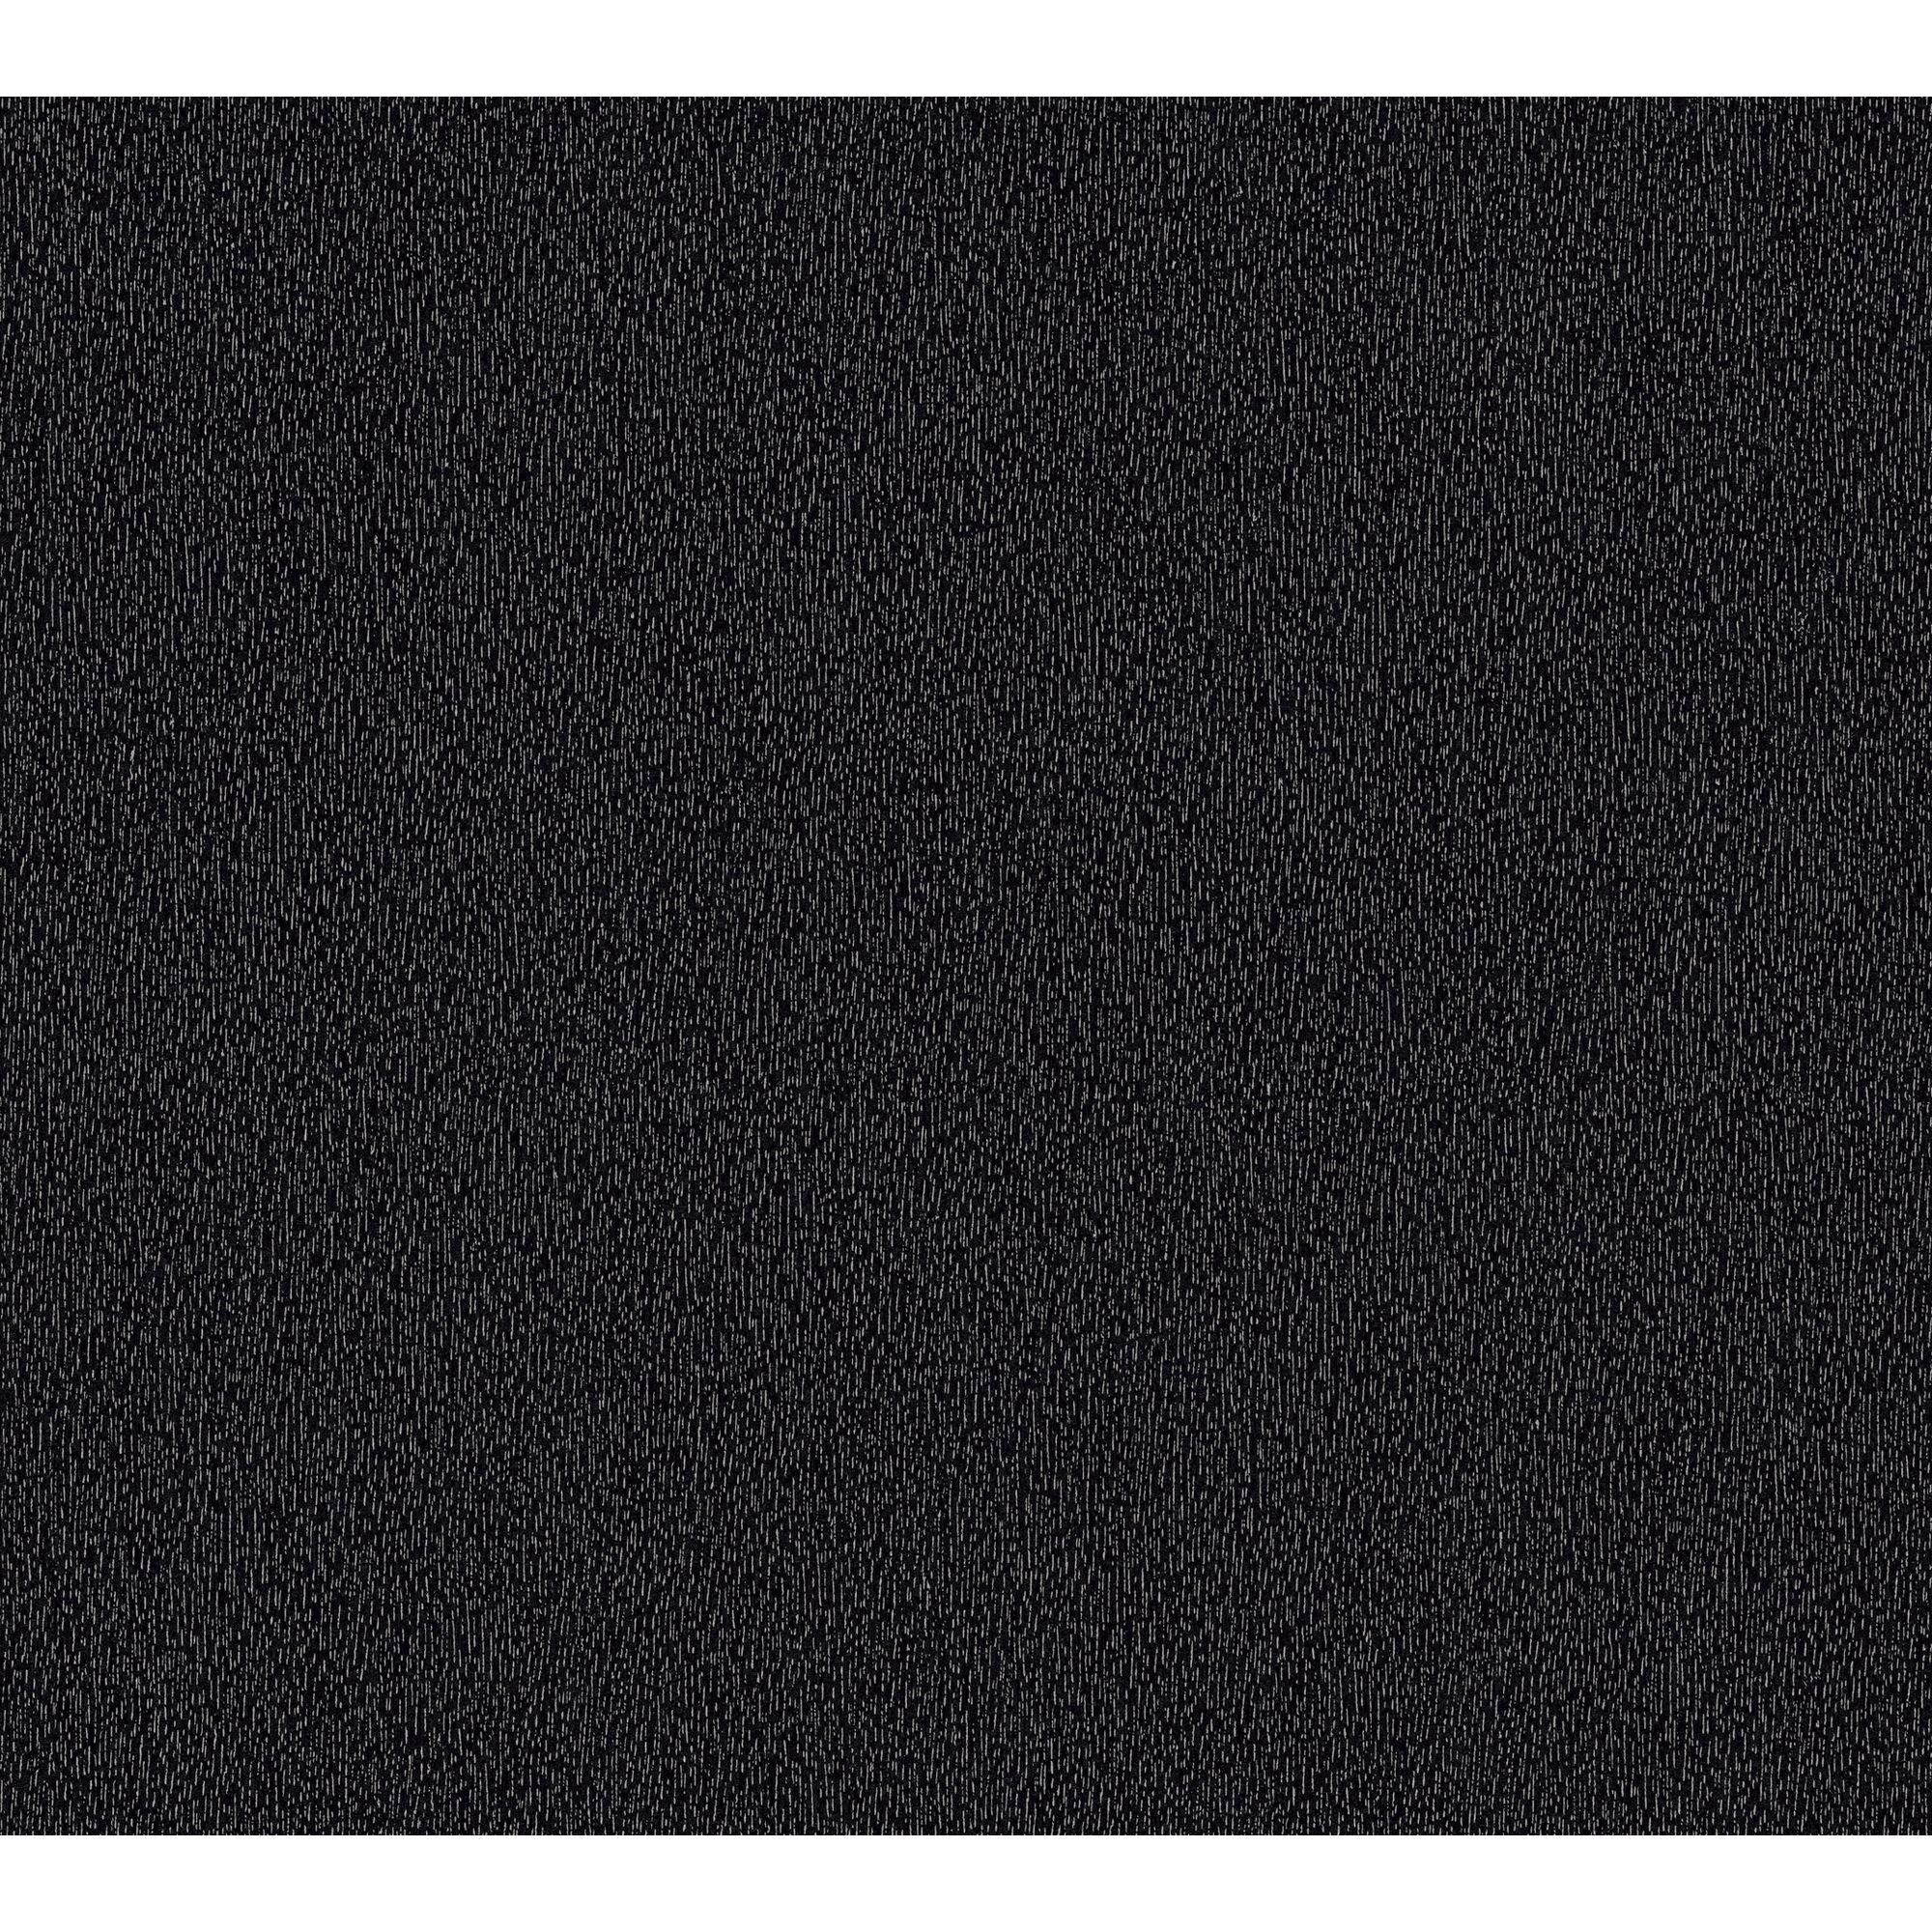 Vliestapete 'Daniel Hechter 6' Uni strukturiert schwarz 53 x 1005 cm + product picture